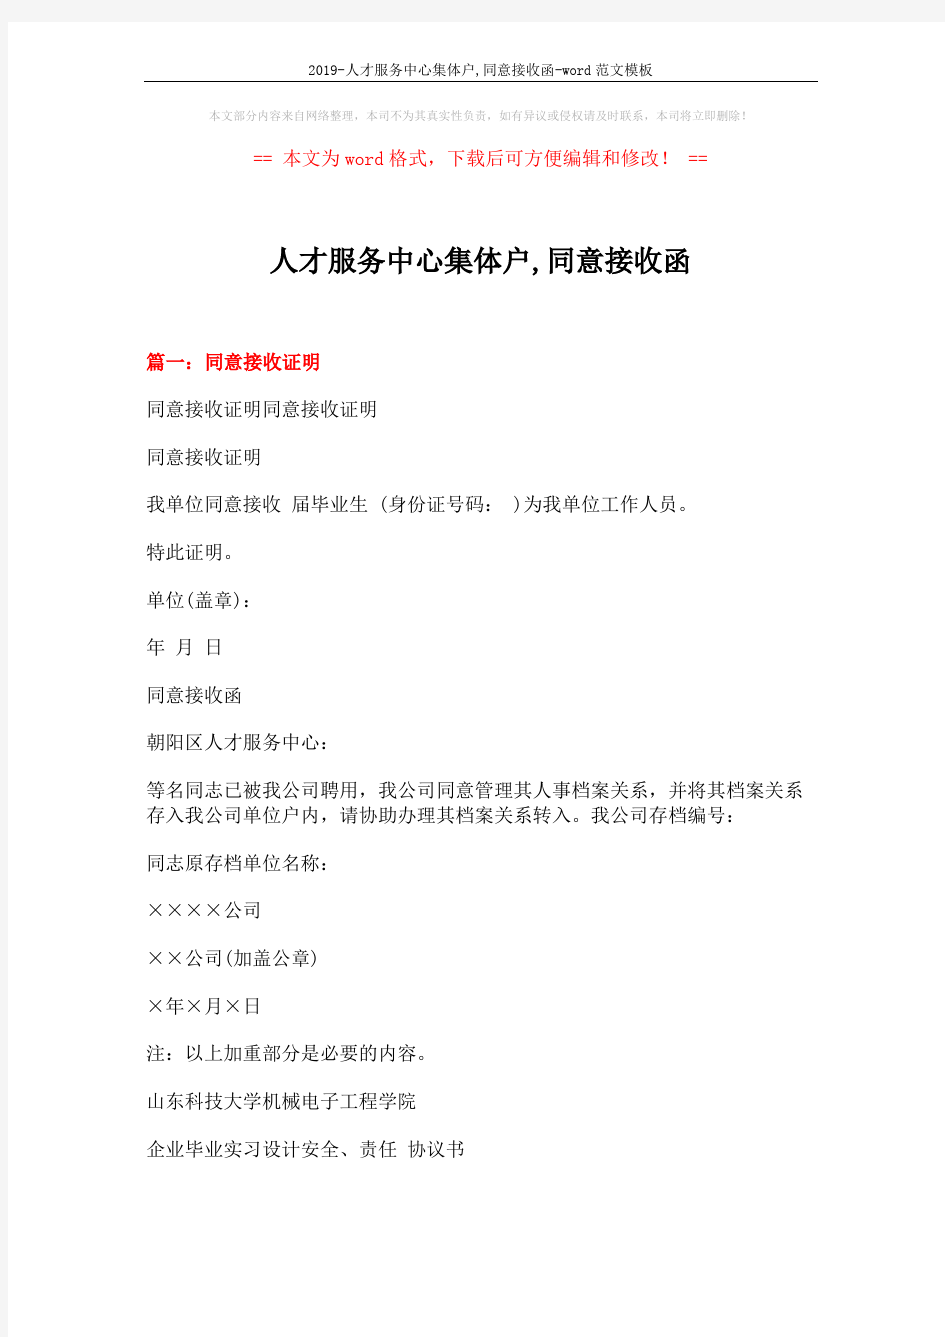 2019-人才服务中心集体户,同意接收函-word范文模板 (4页)